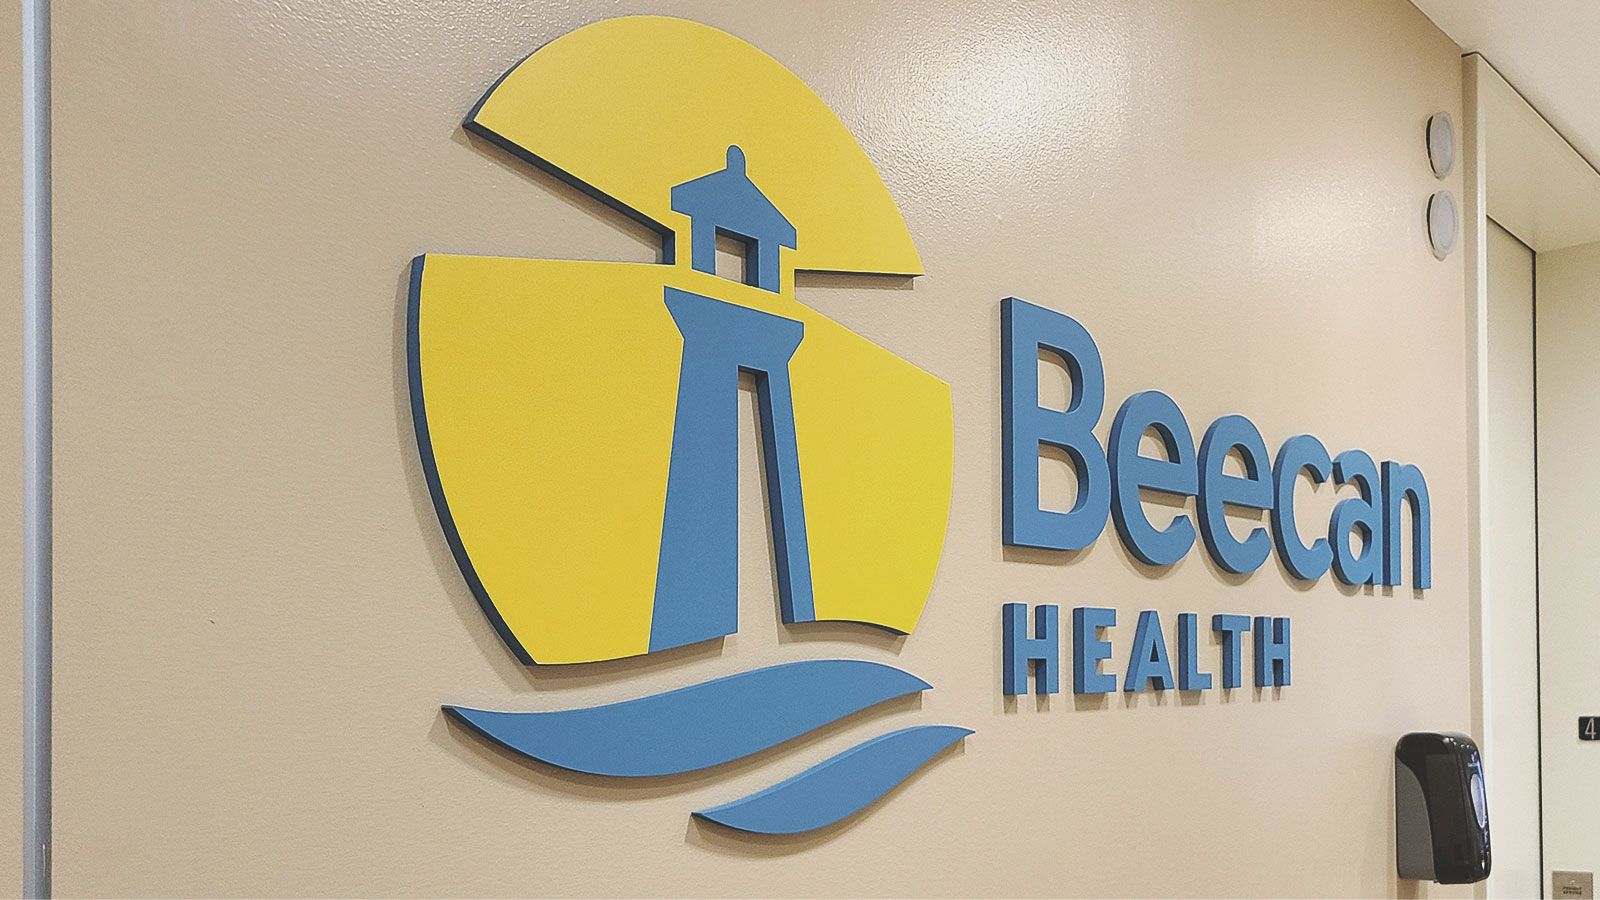 Beecan Health acrylic sign